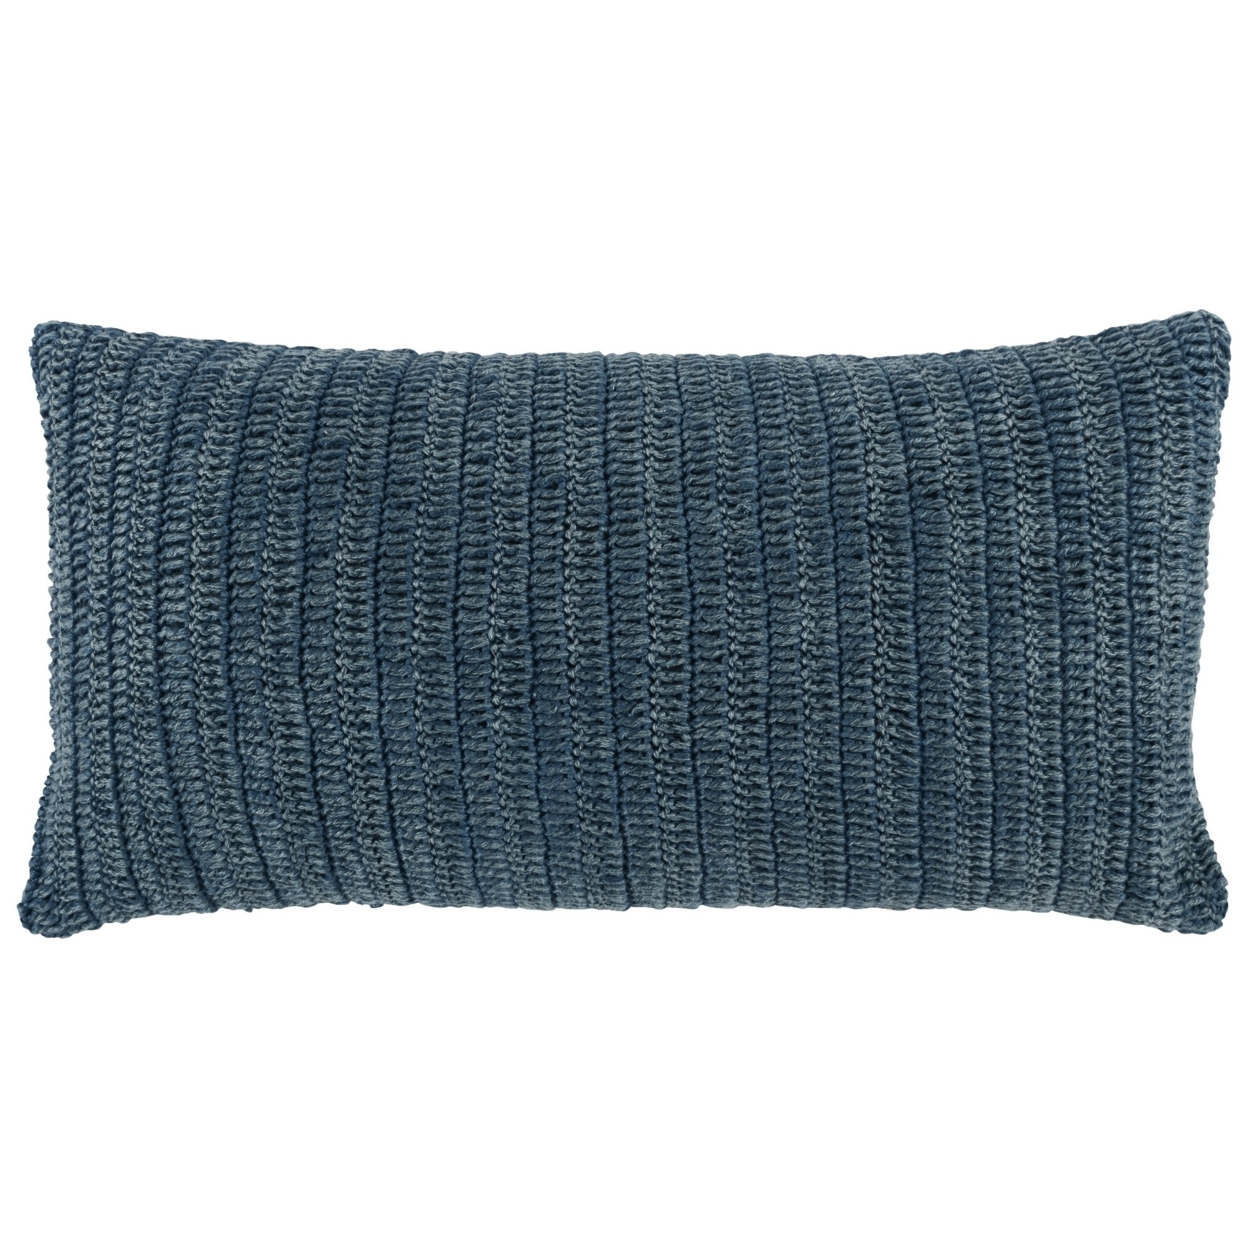 Rosie 14 X 26 Lumbar Accent Throw Pillow, Hand Knitted Designs, Blue Linen- Saltoro Sherpi